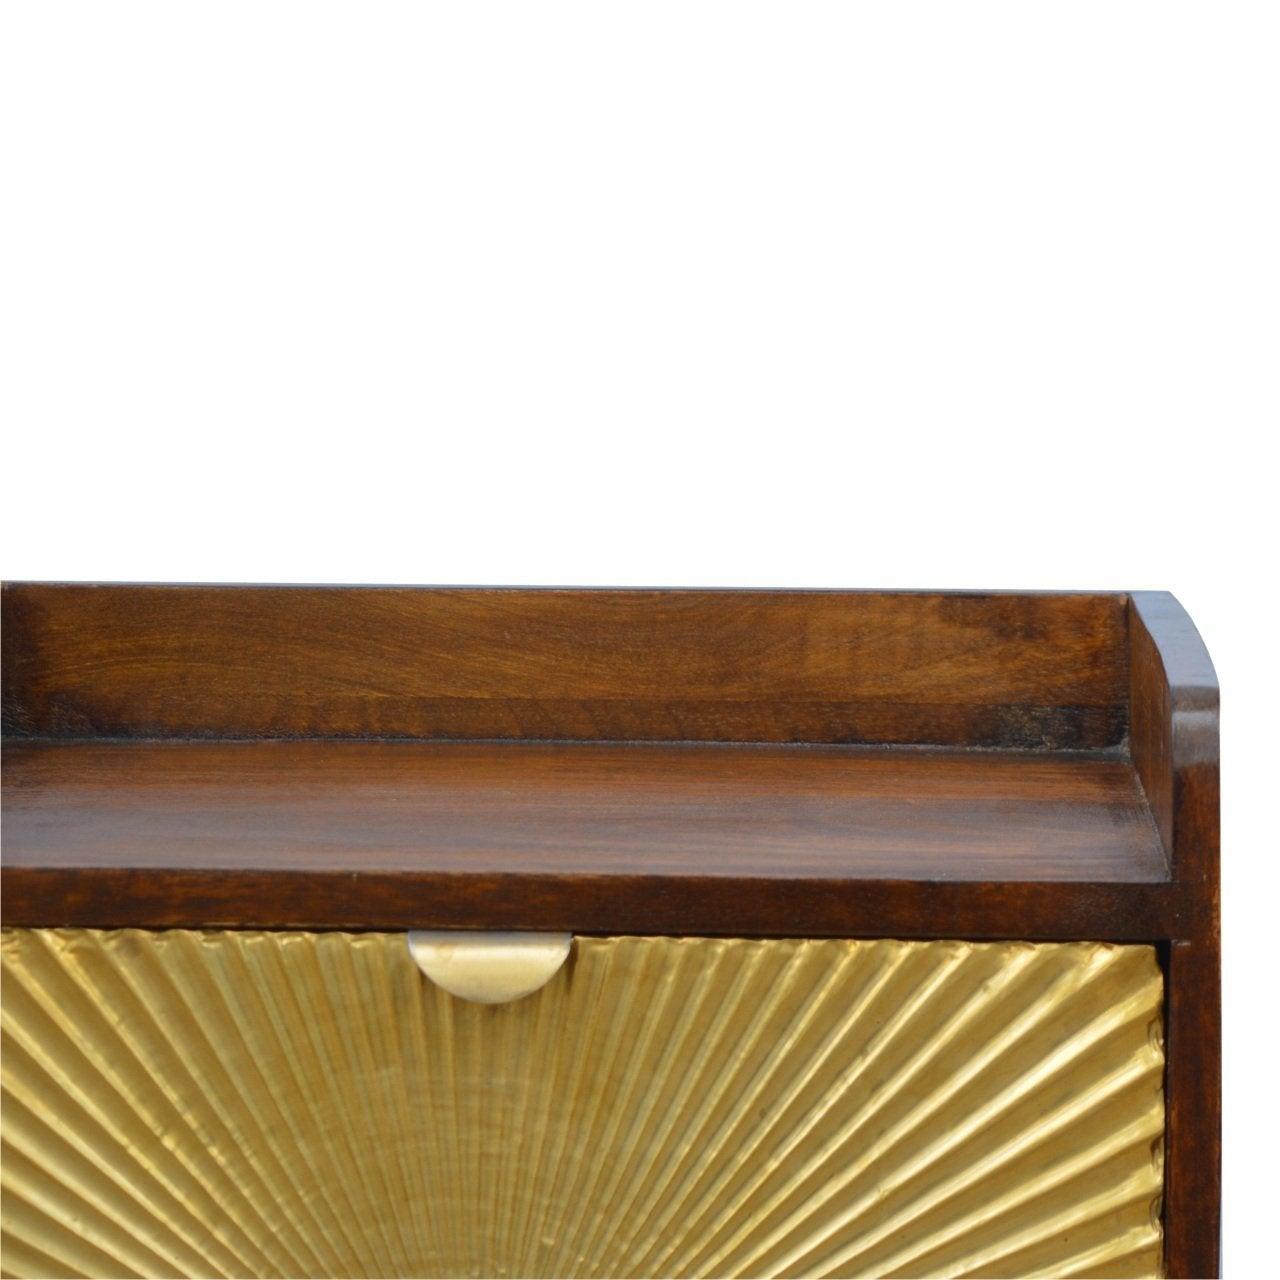 Manila gold 1 drawer bedside table - crimblefest furniture - image 4